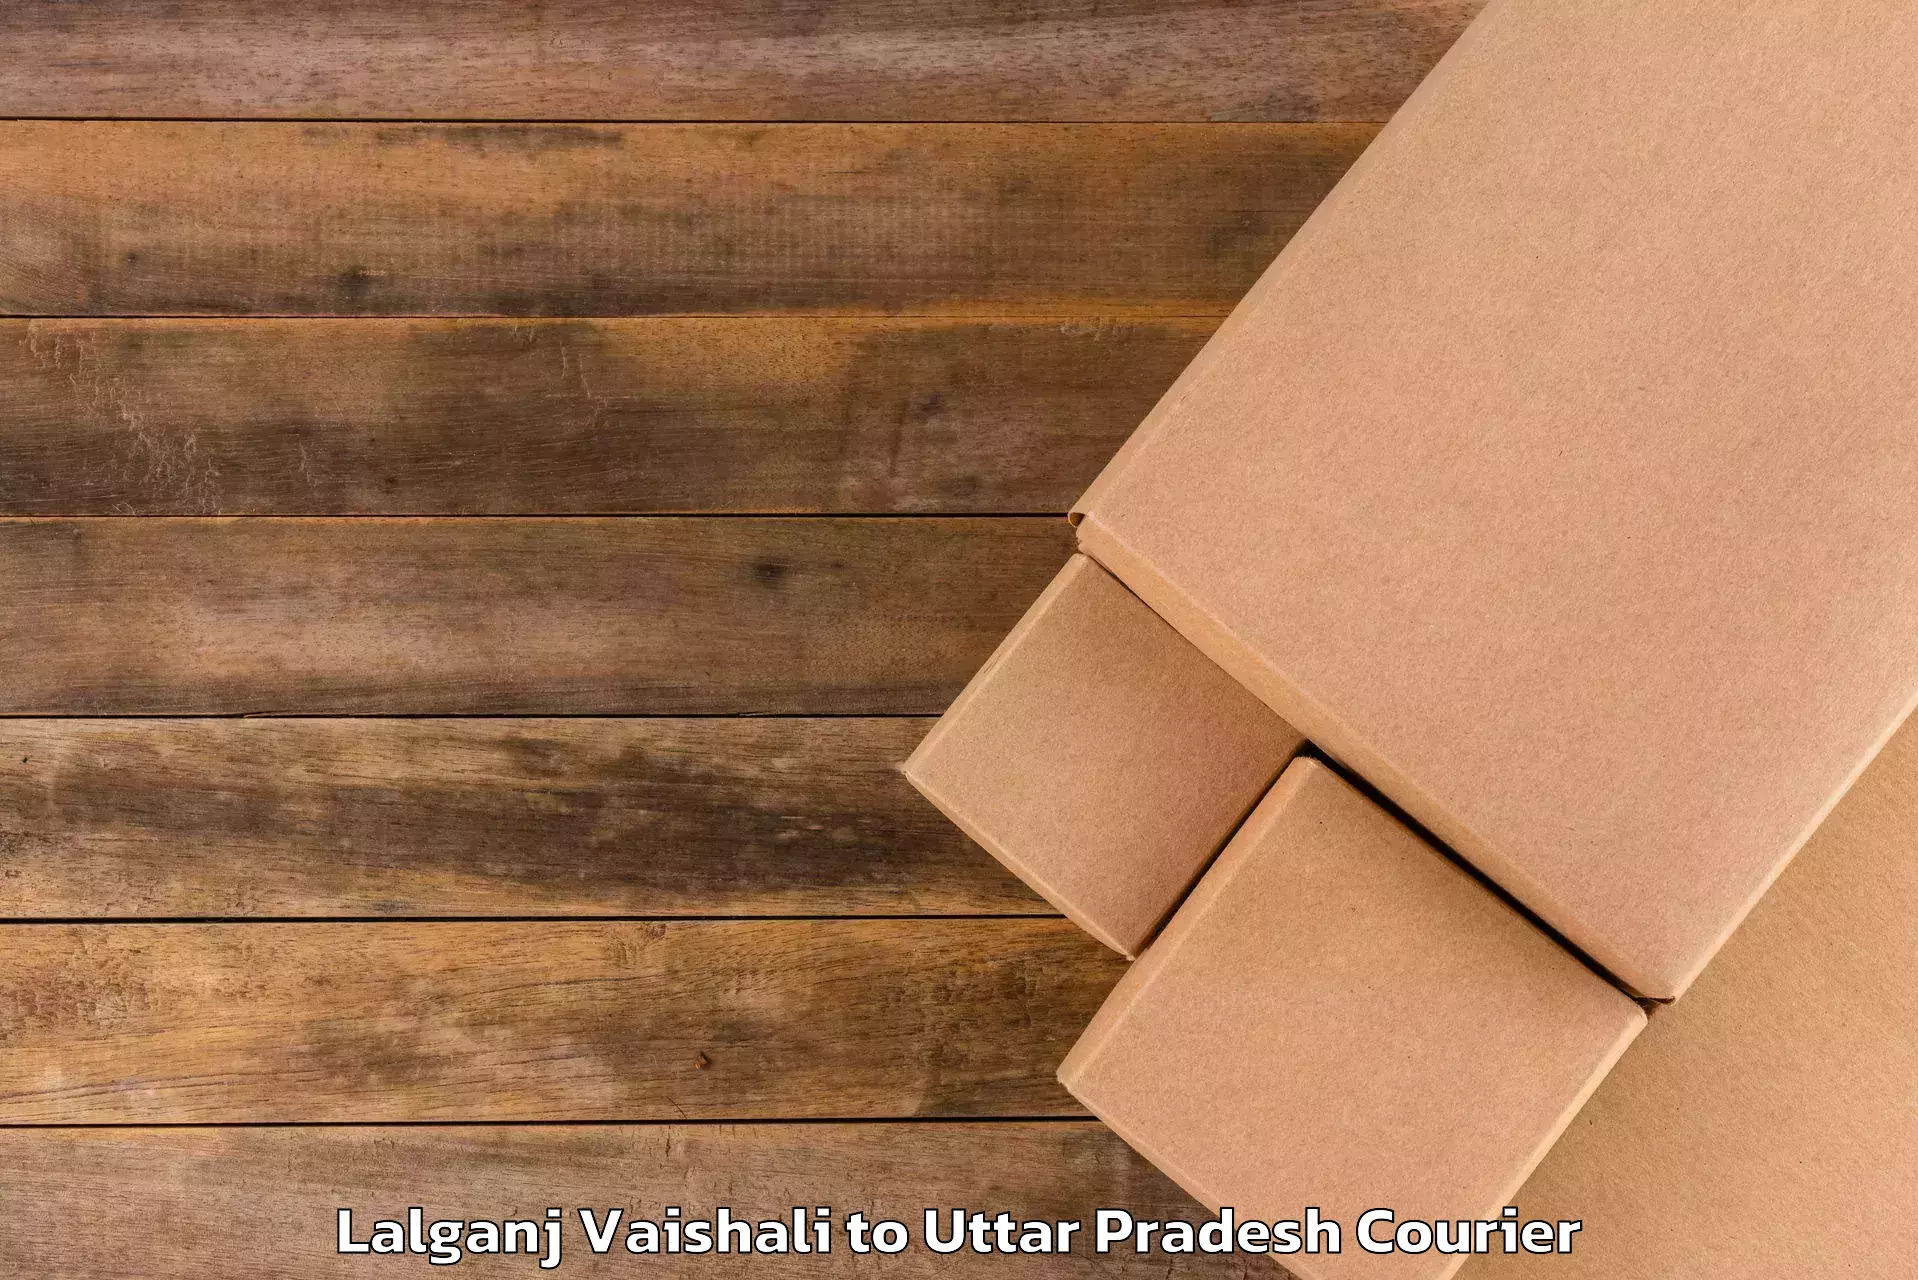 Customized luggage delivery Lalganj Vaishali to Shahabad